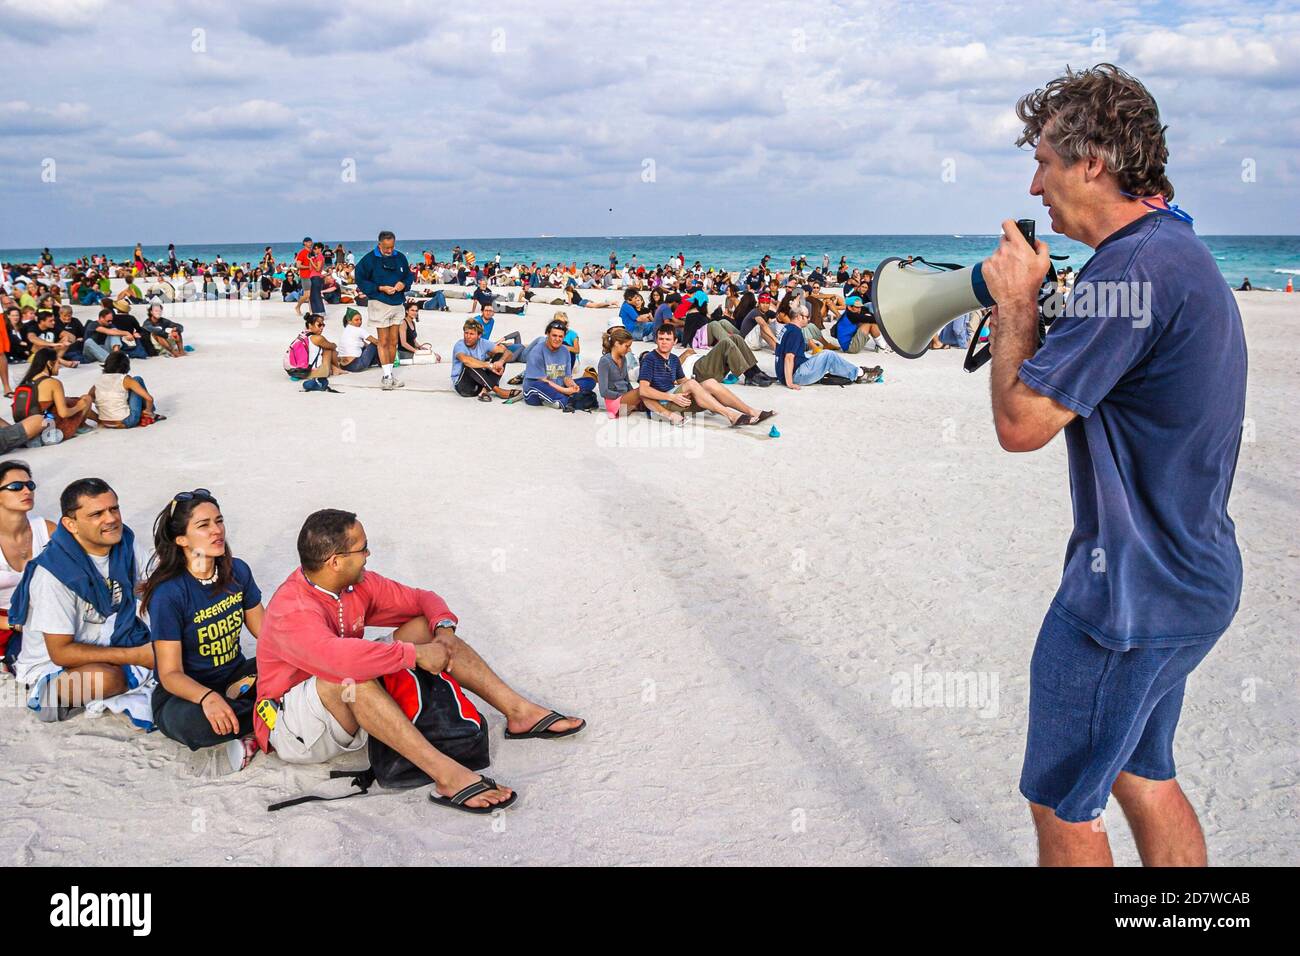 Miami Beach Florida, costa dell'Oceano Atlantico, riva del litorale Greenpeace protesta persone arrangiato Picasso's artwork fotografia aerea, volontari direttore usin Foto Stock